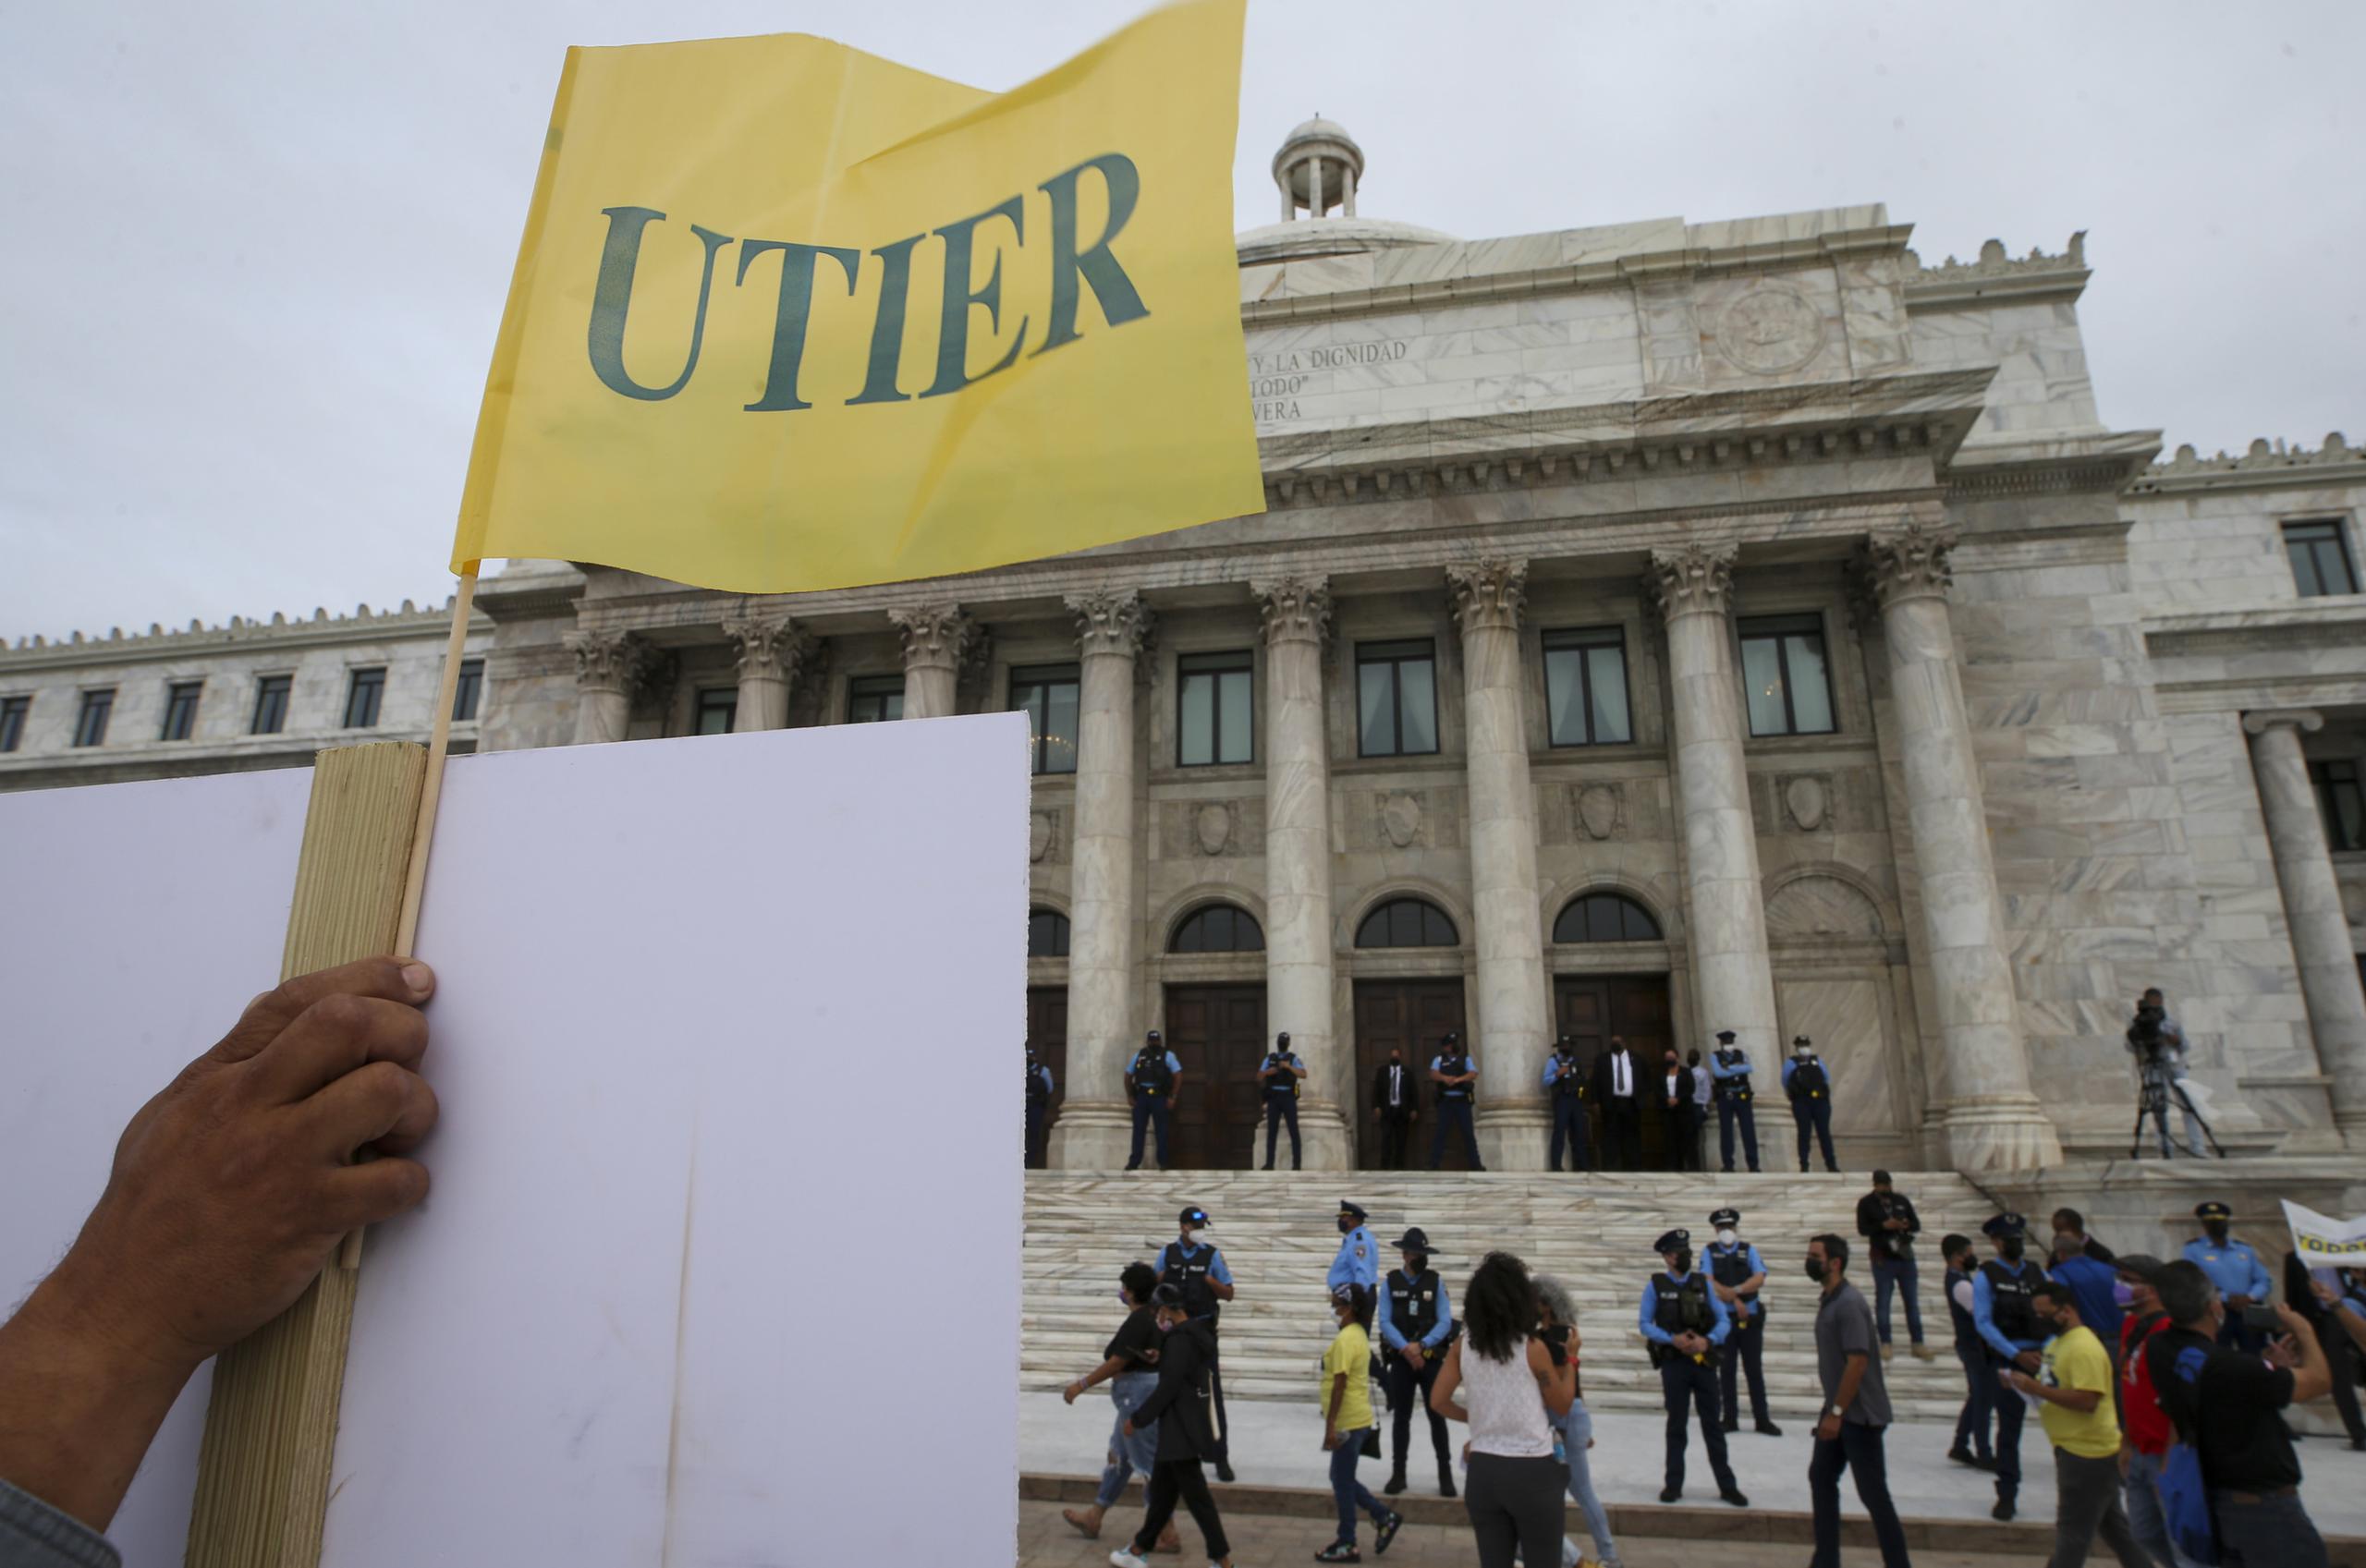 Un grupo significativo de miembros de la UTIER, sindicato más numeroso dentro de la Autoridad de Energía Eléctrica, dijeron presente en la protesta.